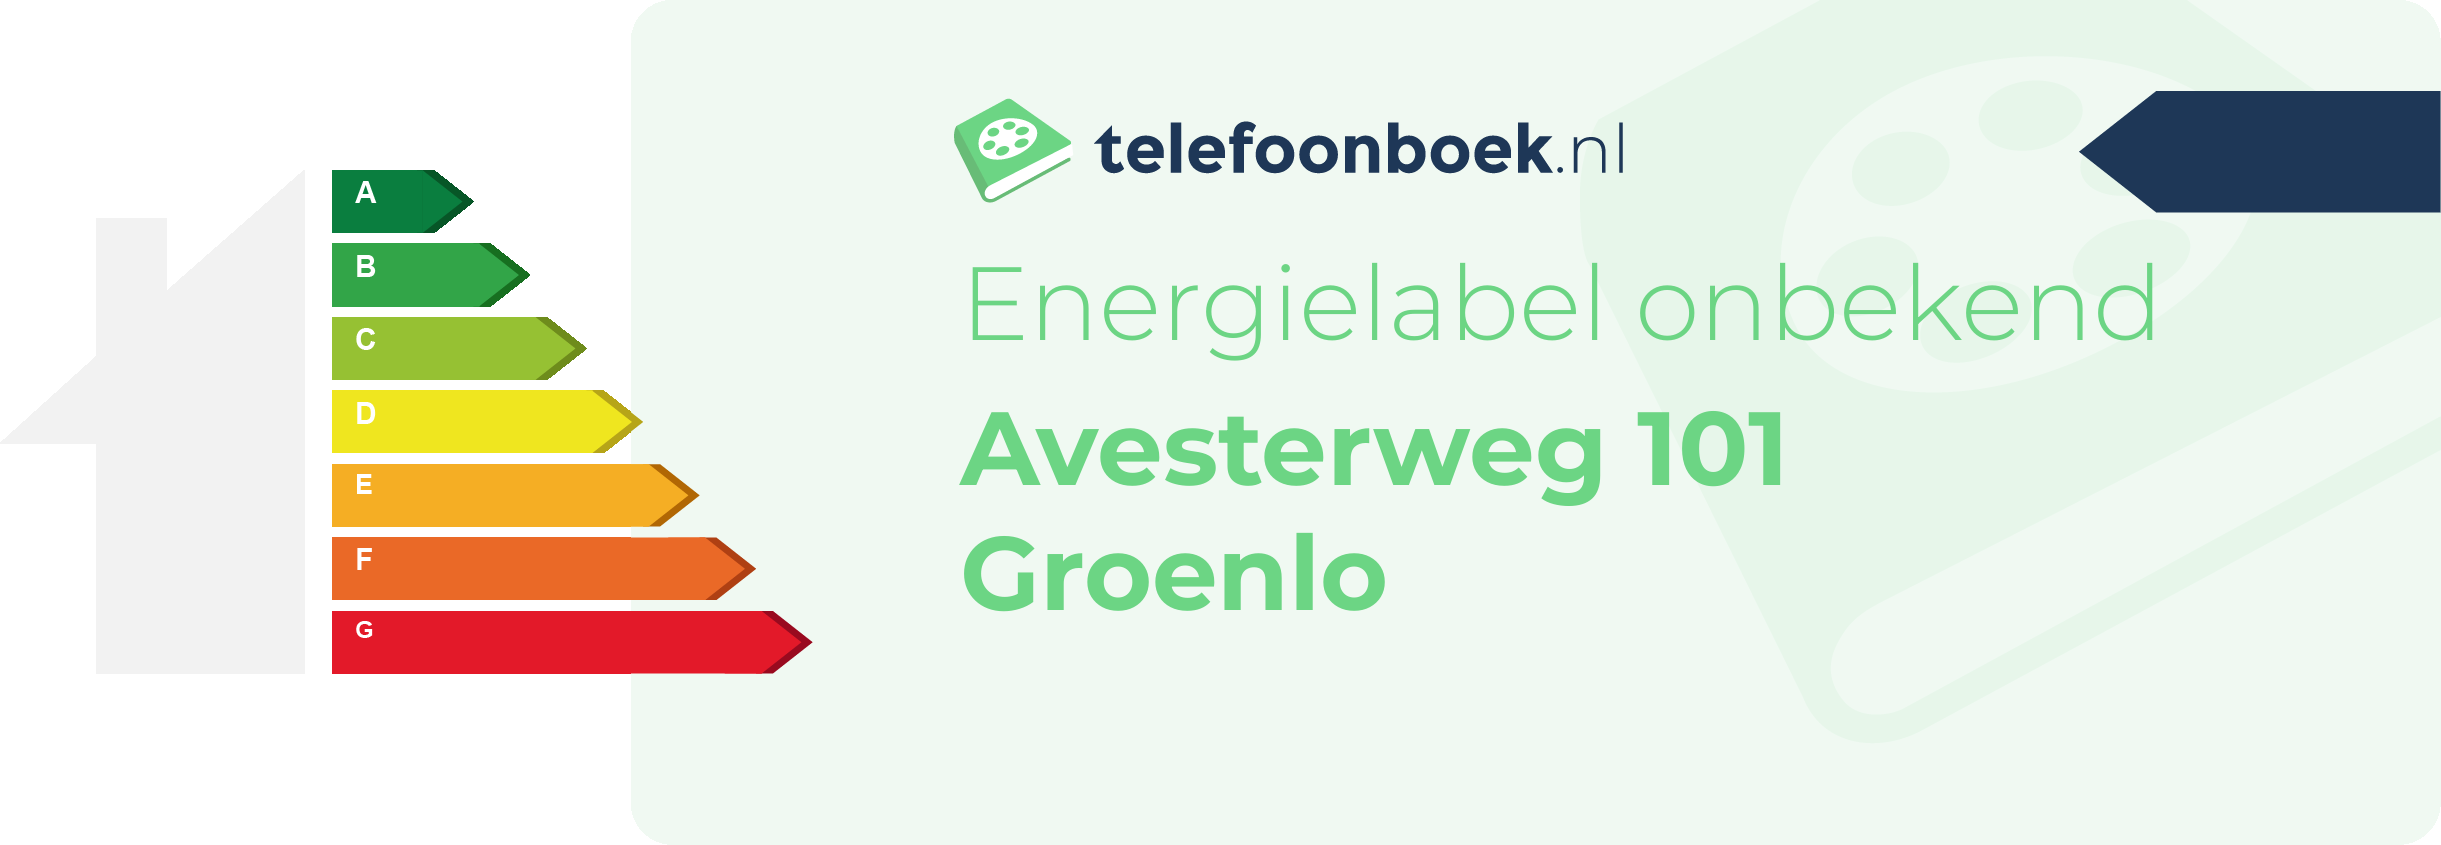 Energielabel Avesterweg 101 Groenlo